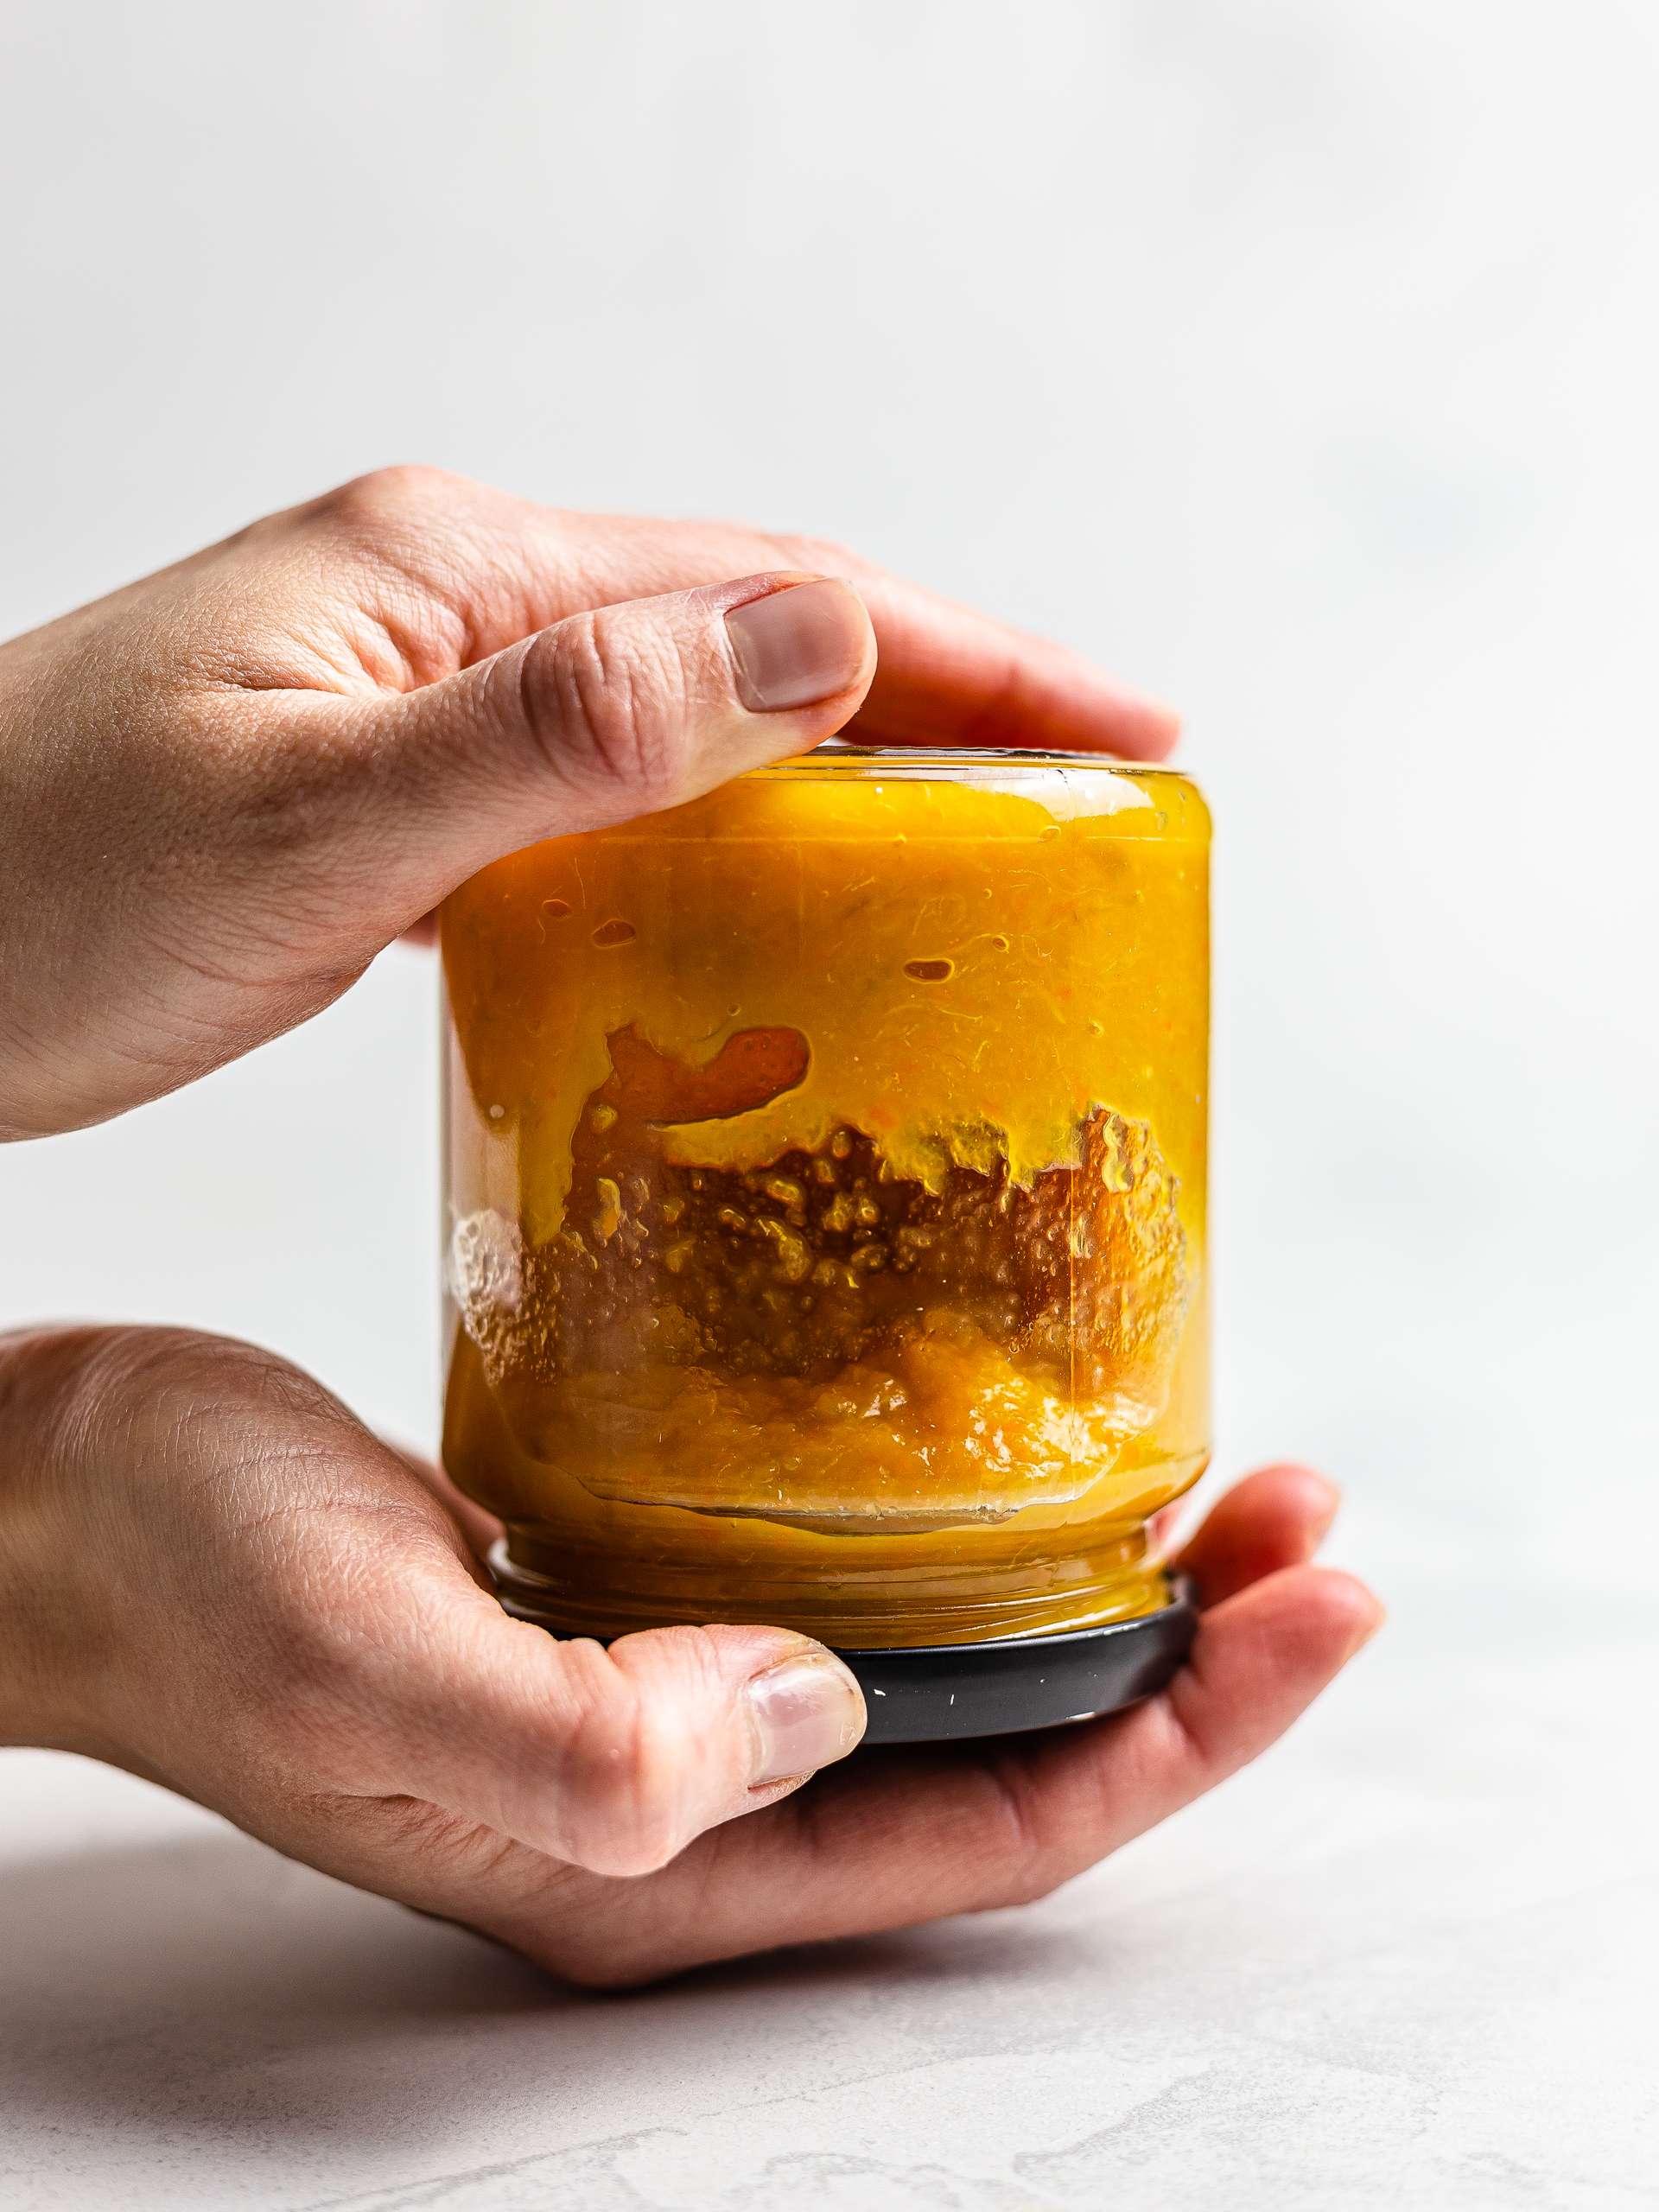 sugar-free orange jam in a jar flipped to seal it